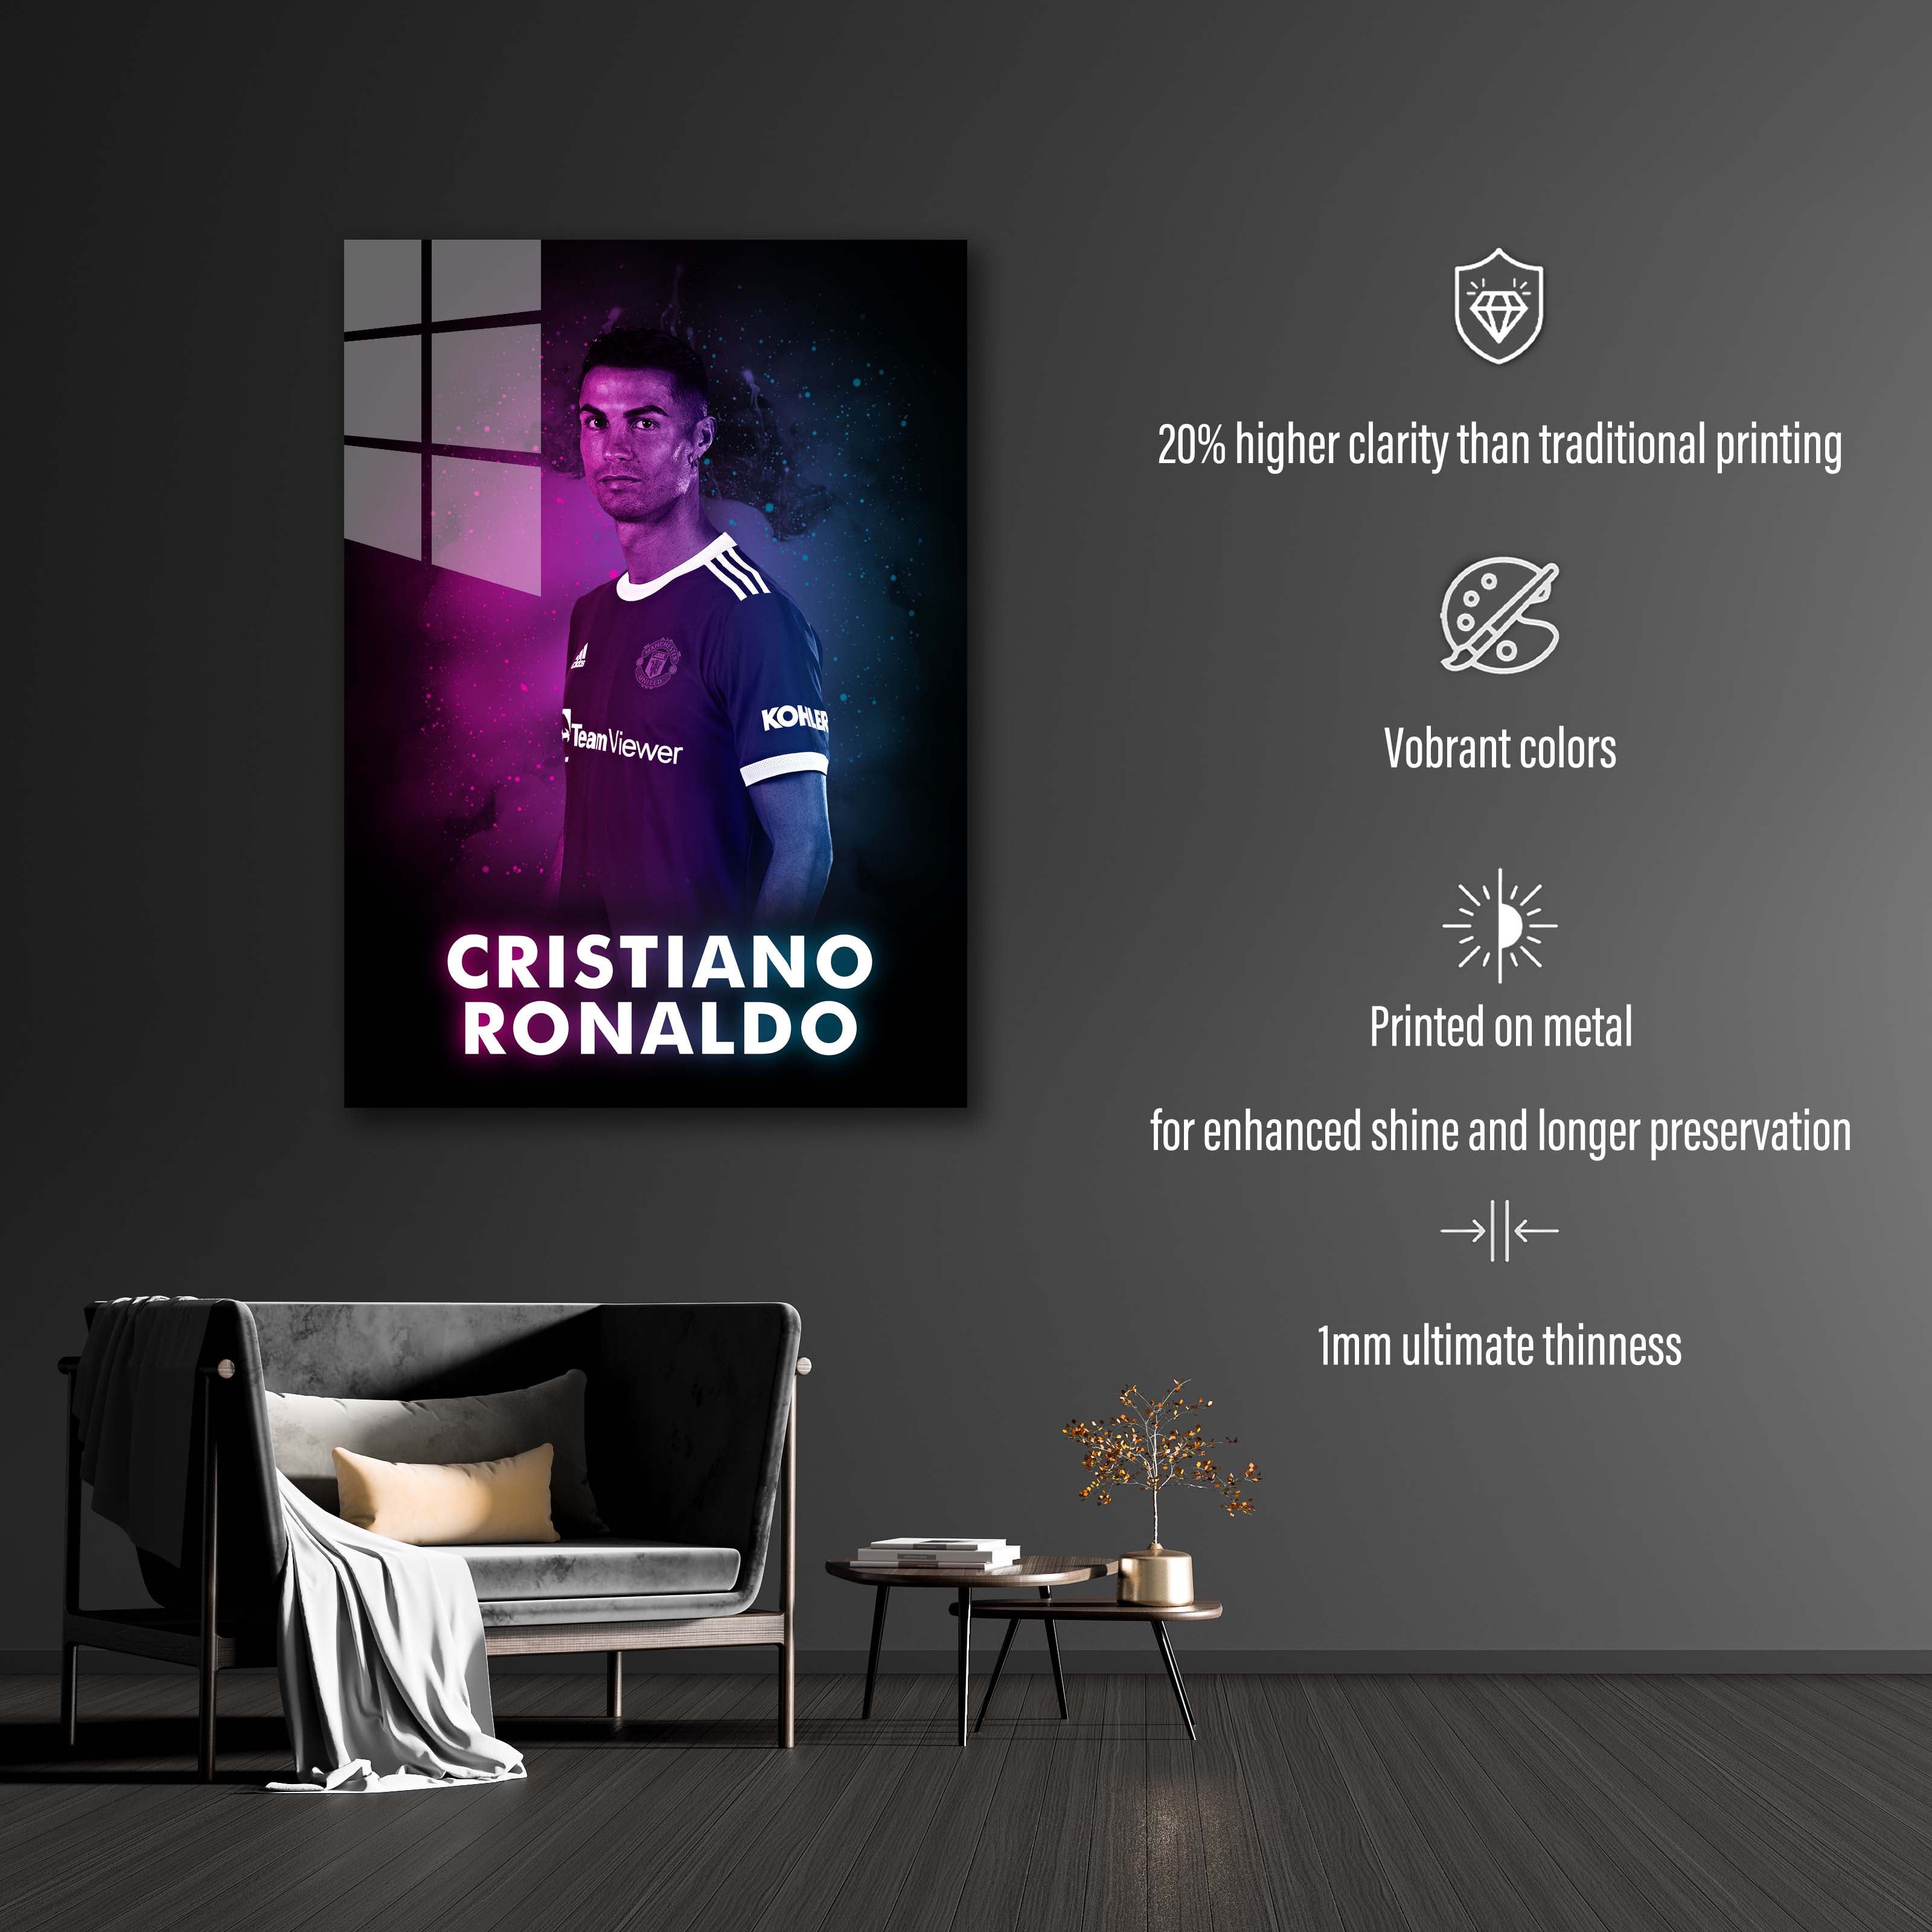 Cristiano Ronaldu MU 1-designed by @Dexpert Zayn